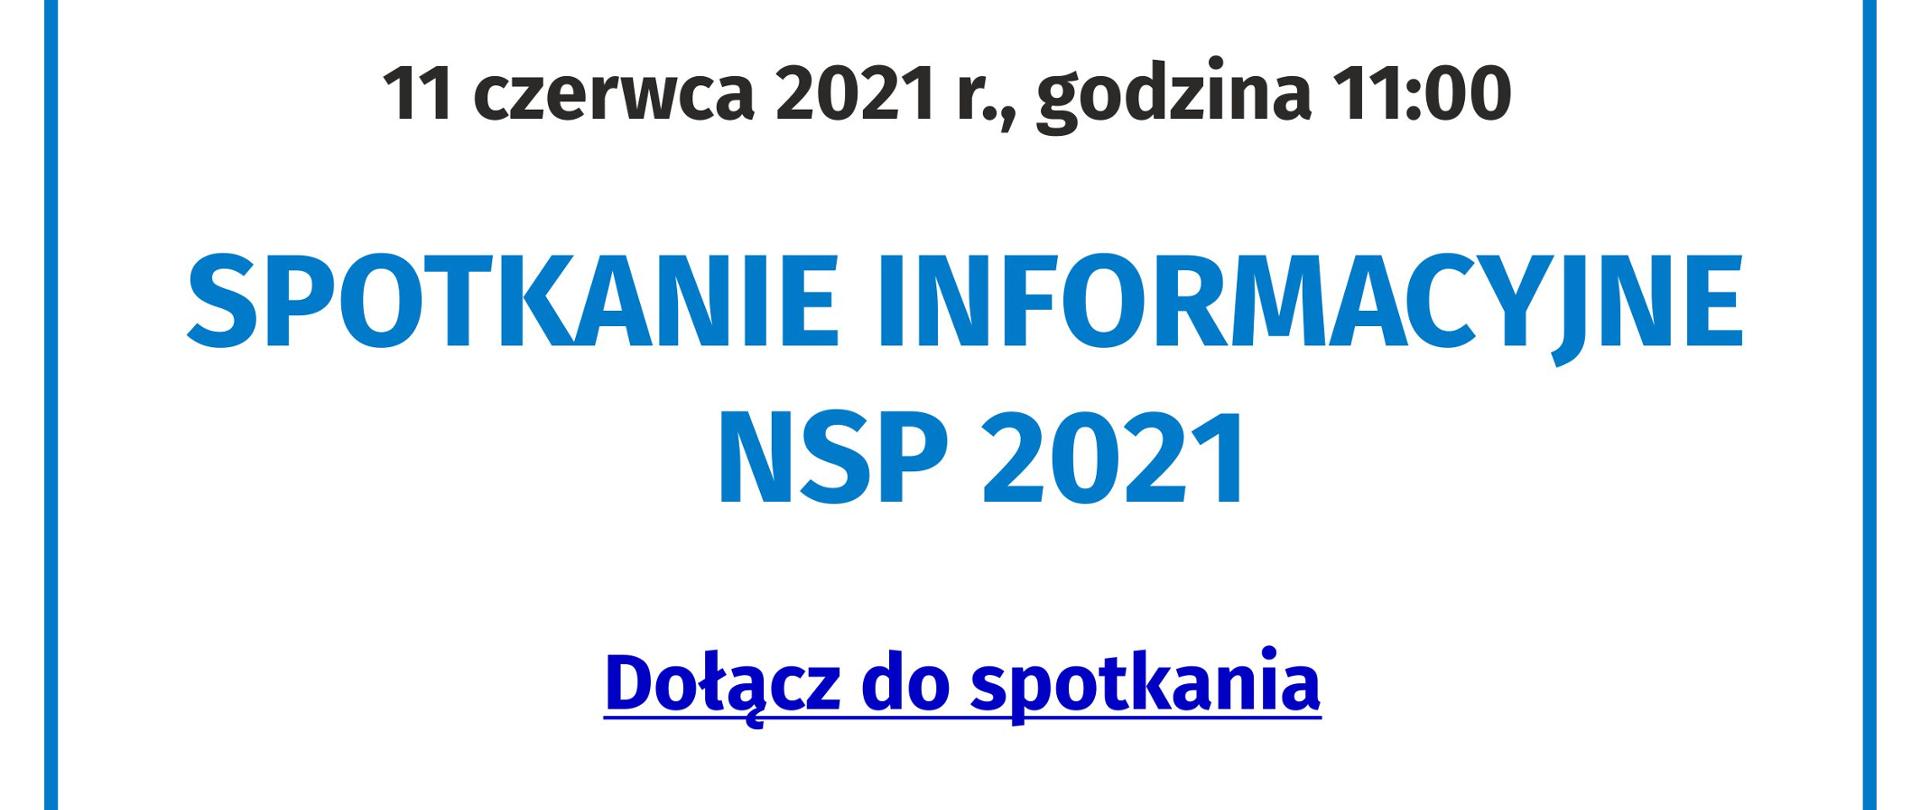 Spotkanie informacyjne NSP 2021 - 11 czerwca 2021 r.